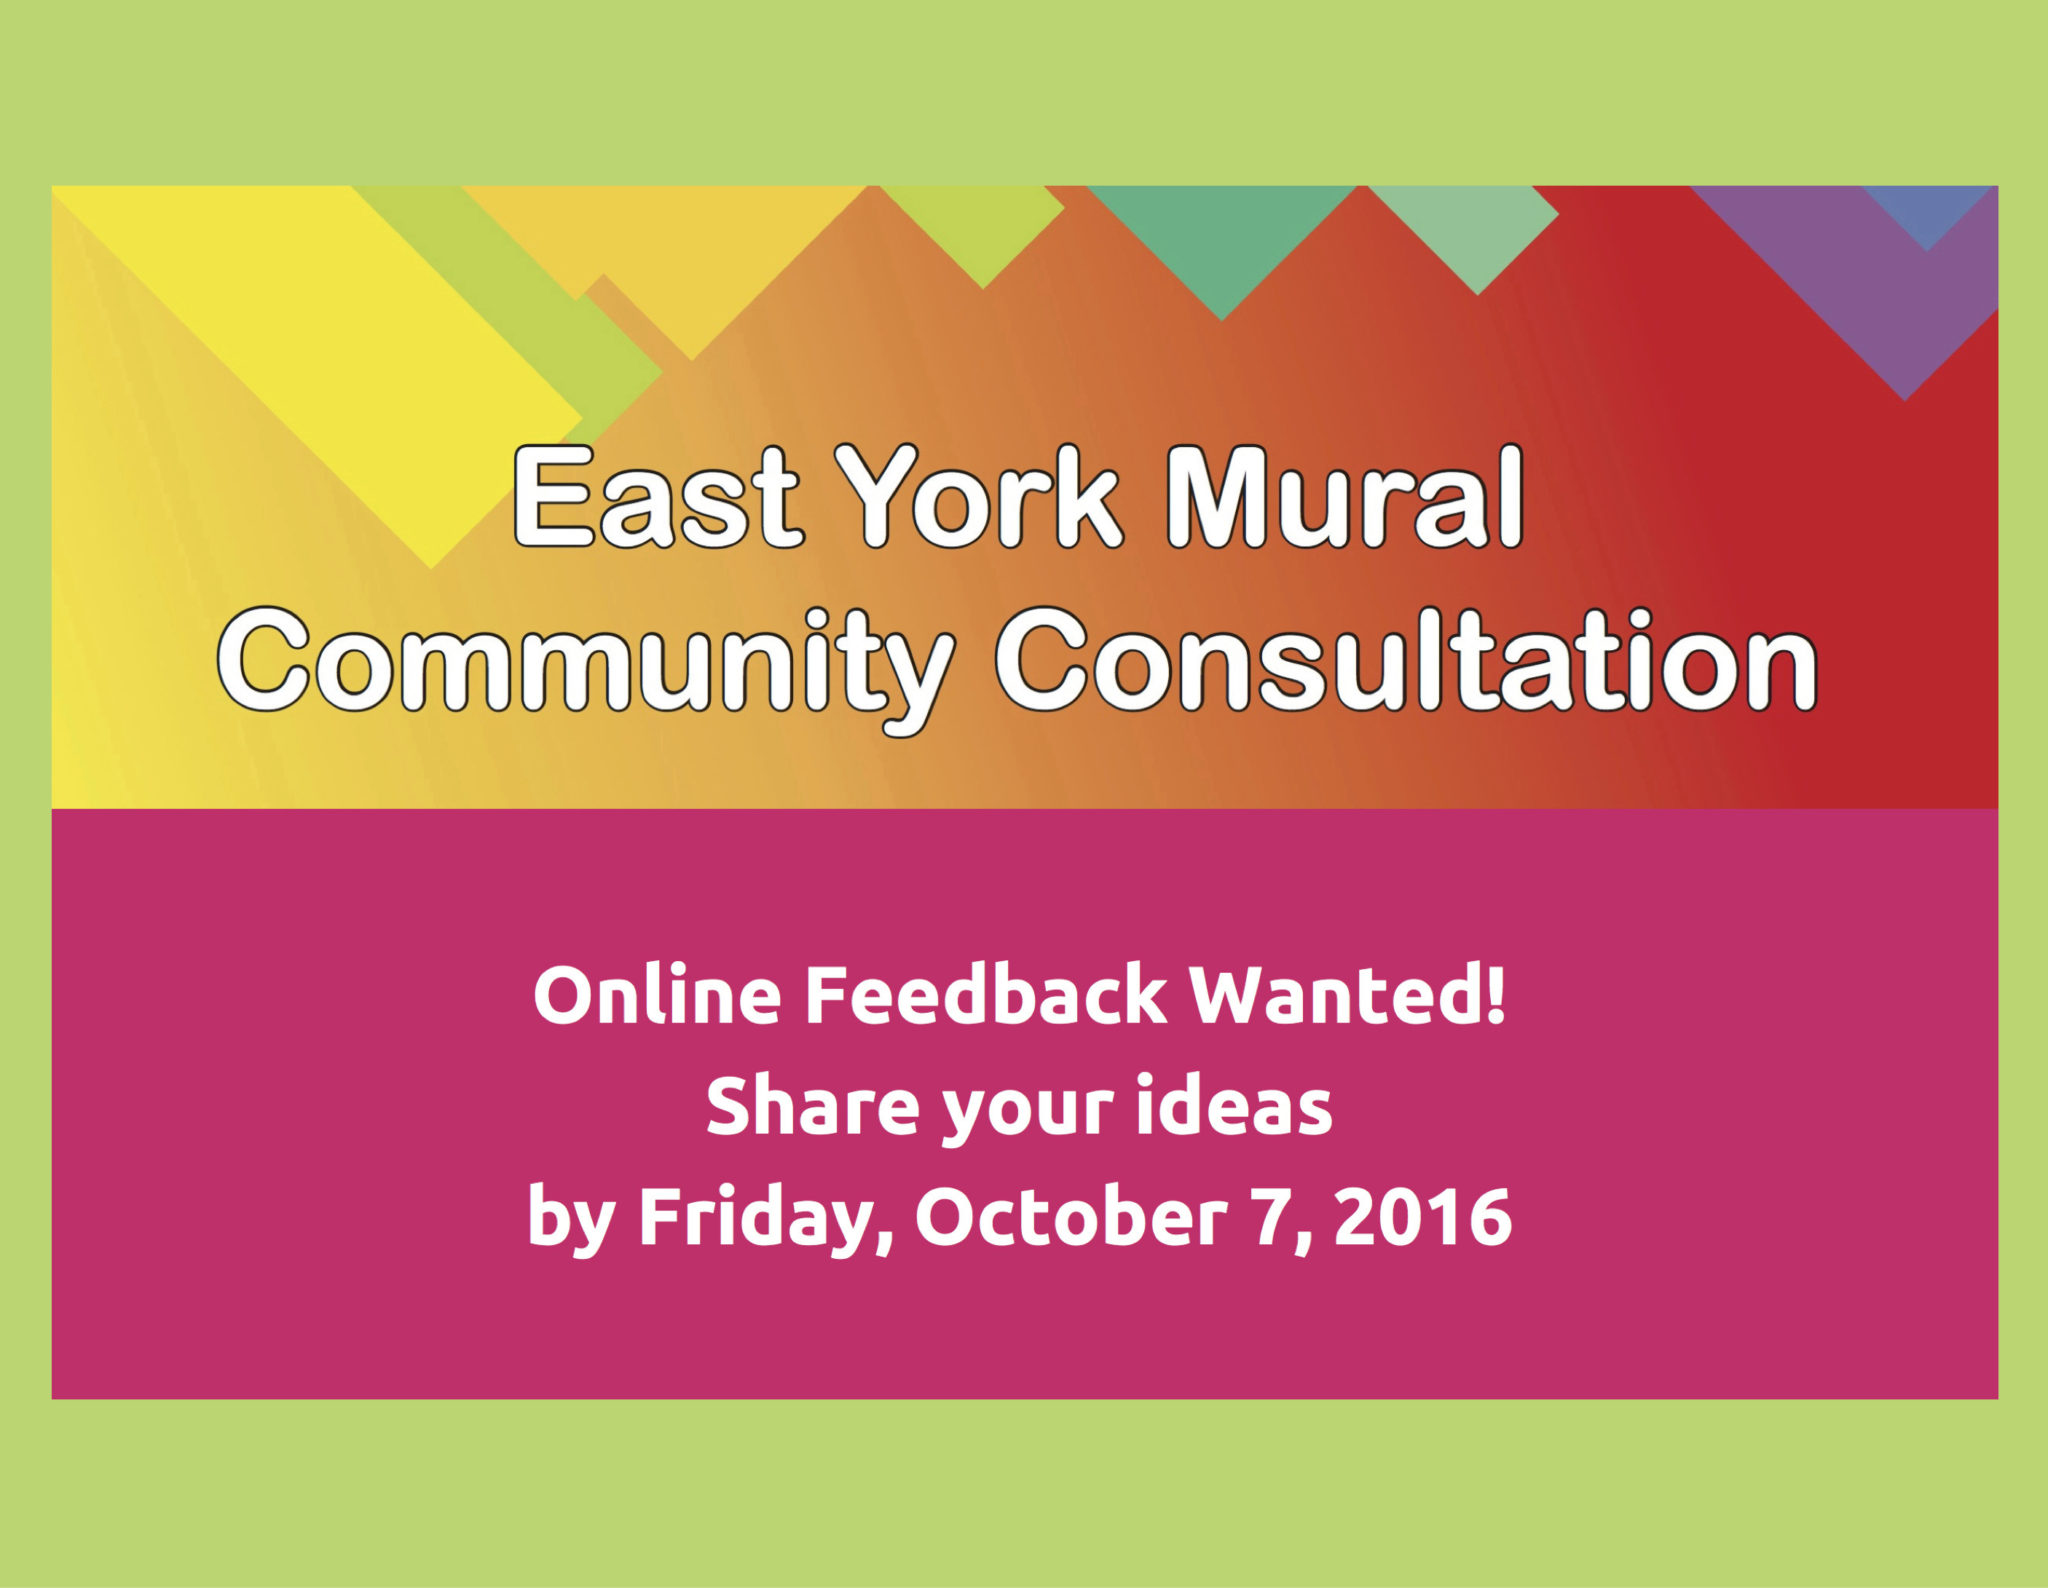 East York Mural Community Consultation